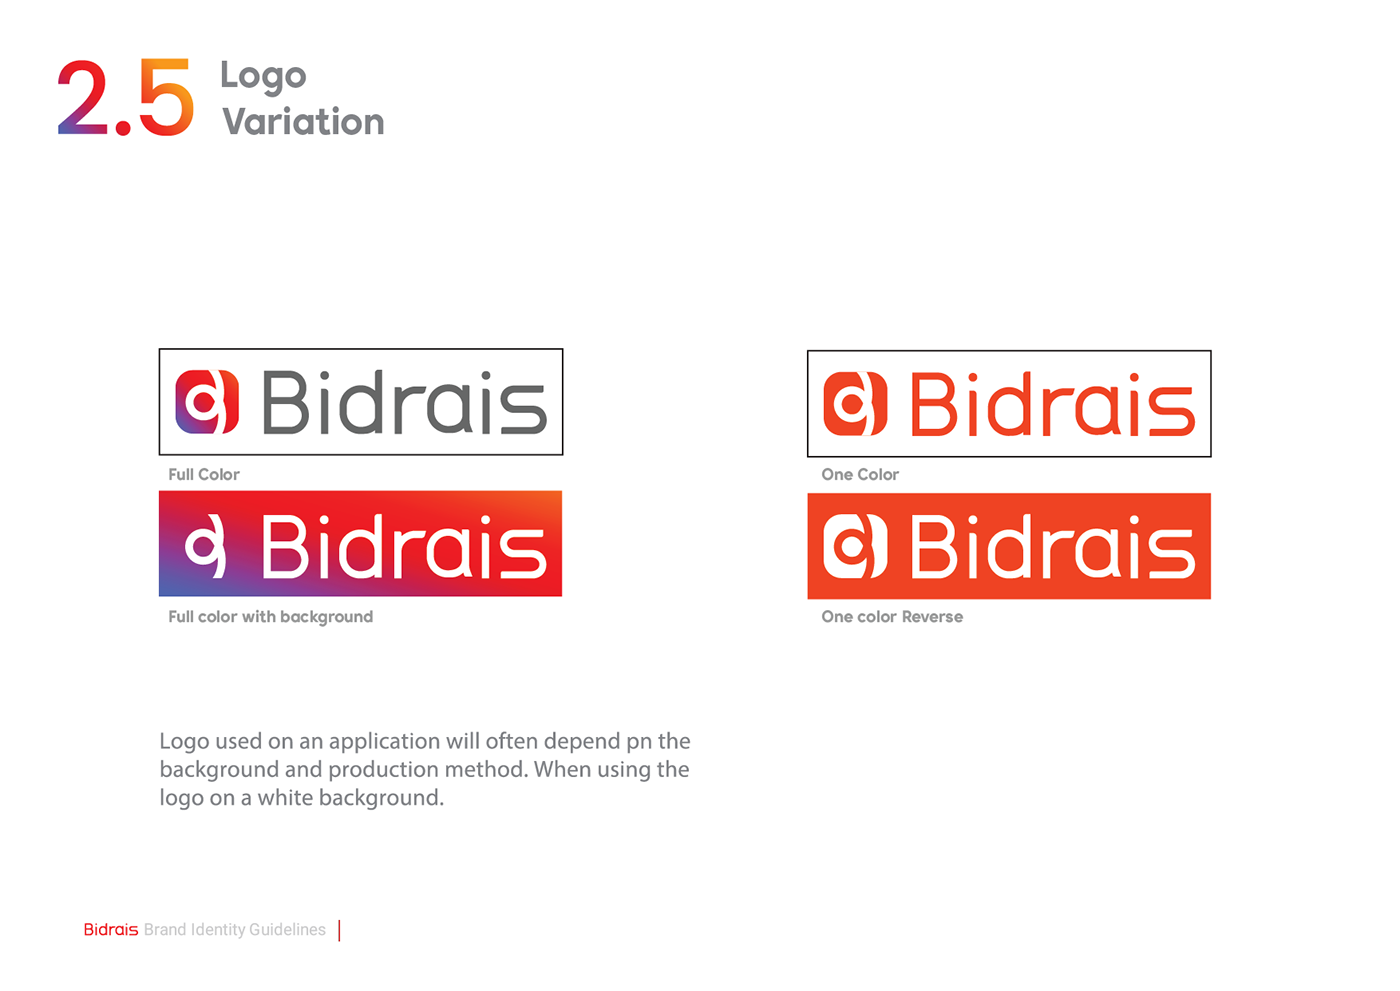 علامة تجارية شعارات Logo Design brand identity logos هوية بصرية شعار identity visual identity Brand Design